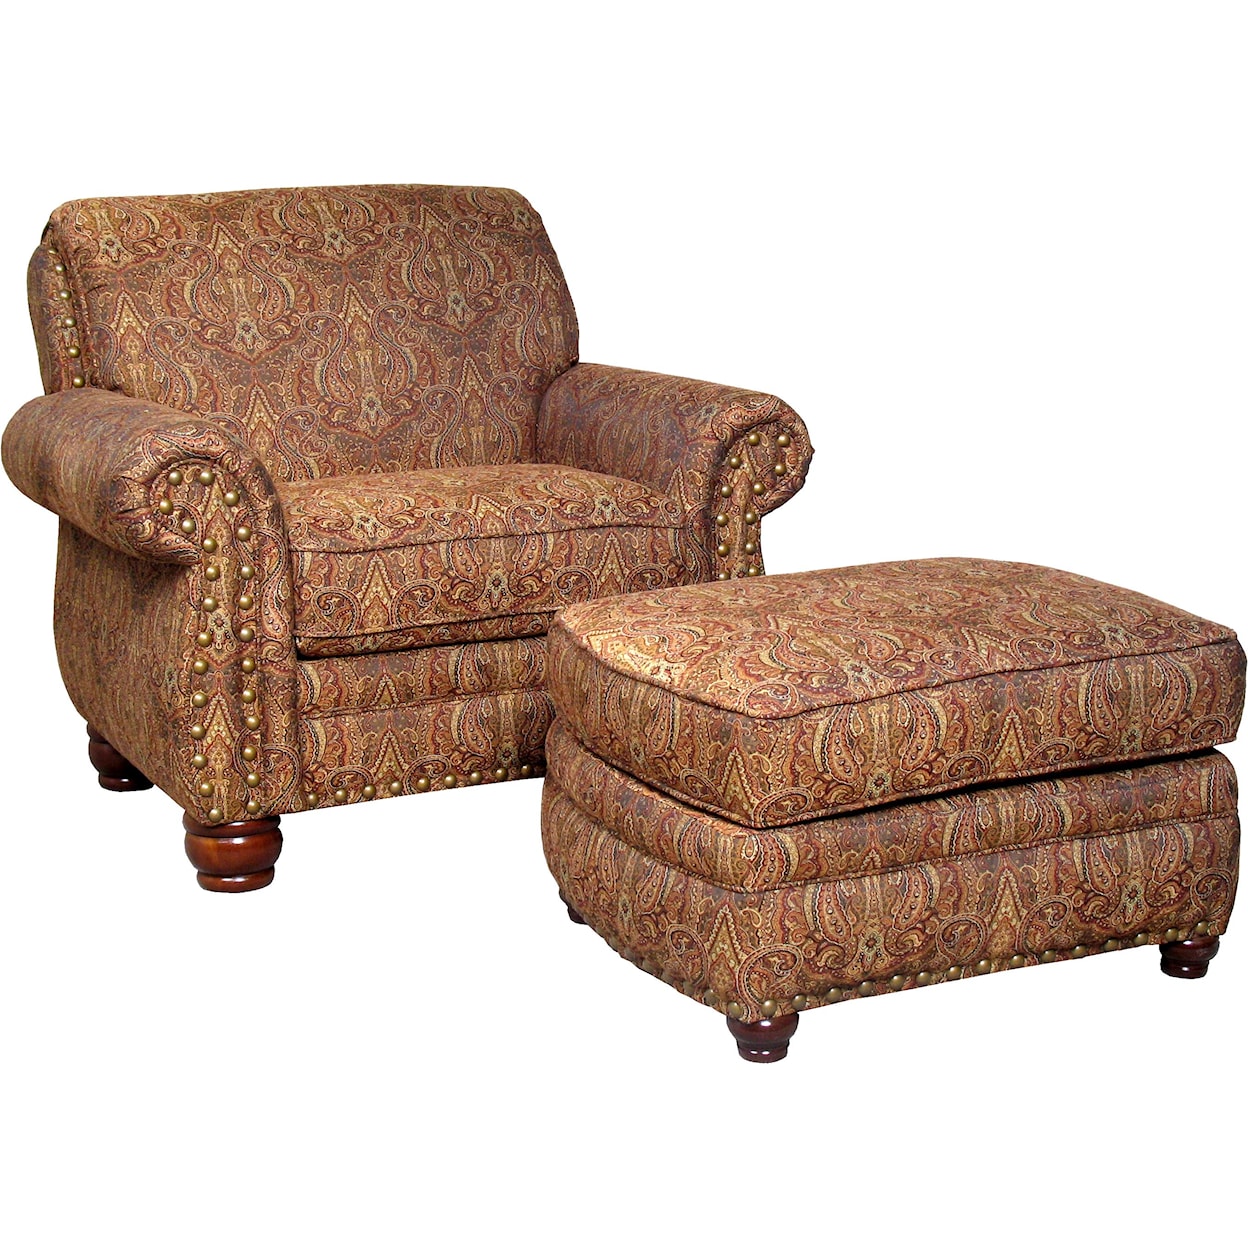 Mayo 9780 Chair and Ottoman